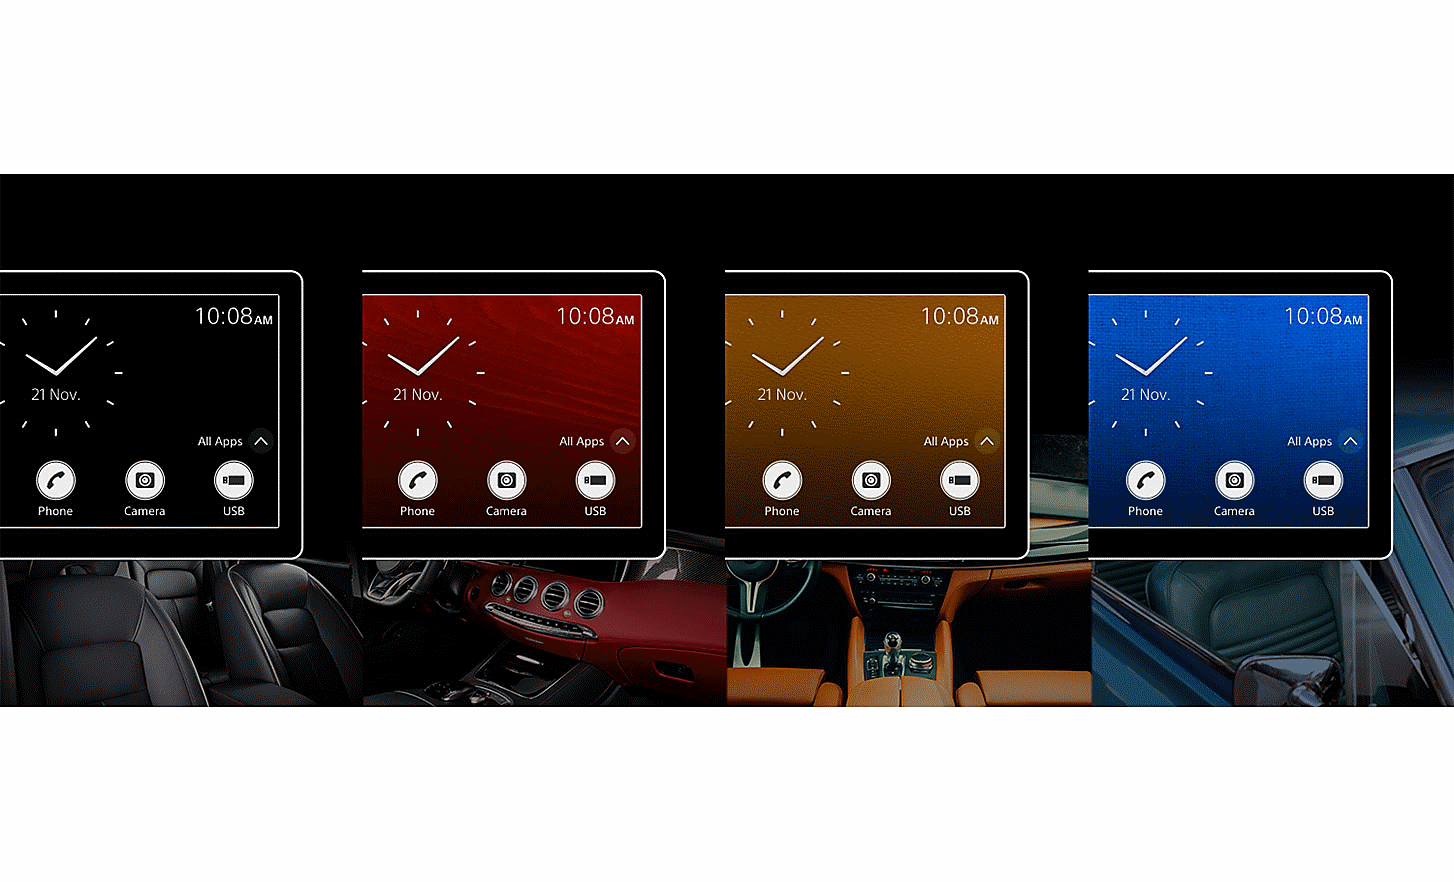 Štyri mediálne prijímače XAV-AX4050 s hodinami a farebným pozadím na obrazovke nad obrázkami interiérov áut v podobných farbách